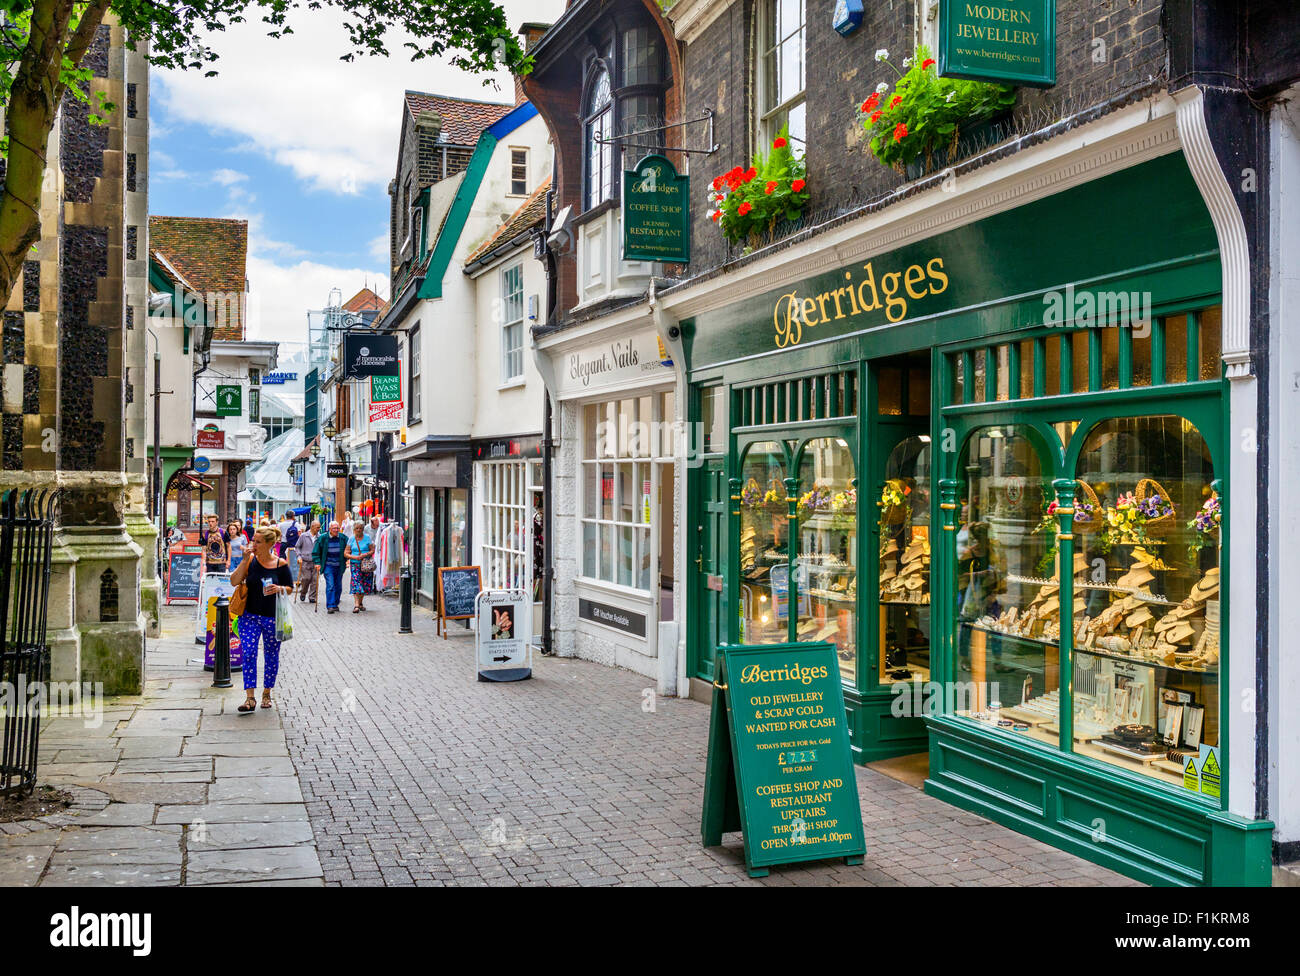 Geschäfte auf Zifferblatt Lane in der Stadt Zentrum, Ipswich, Suffolk, England, UK Stockfoto